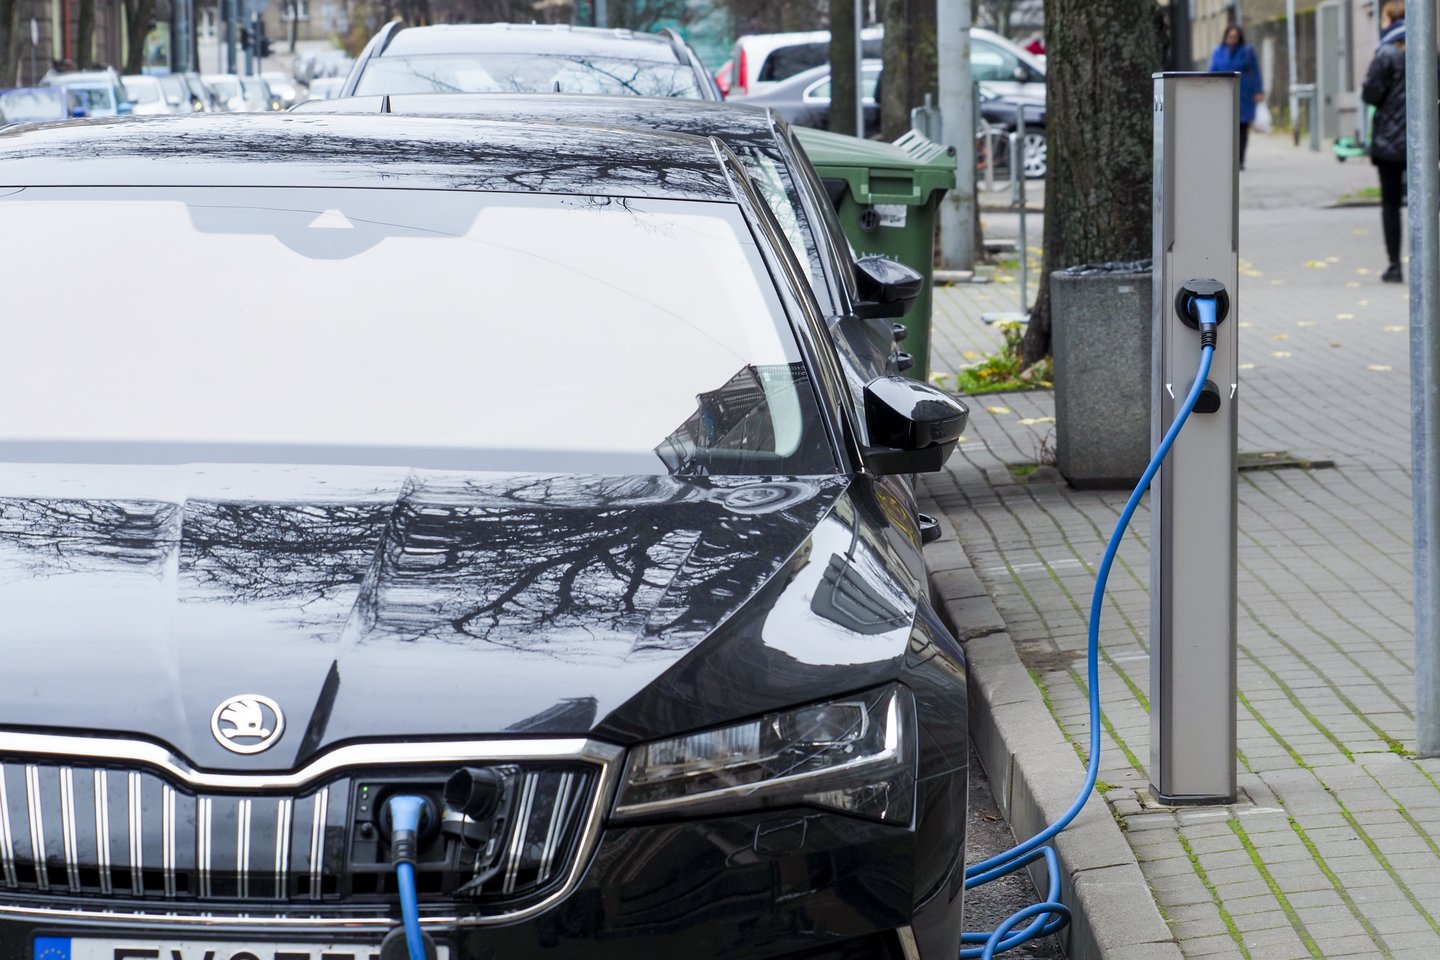 Vilniaus savivaldybė siekia, kad 2030 m. maždaug pusė automobilių sostinėje būtų elektriniai.<br>V.Ščiavinsko nuotr.